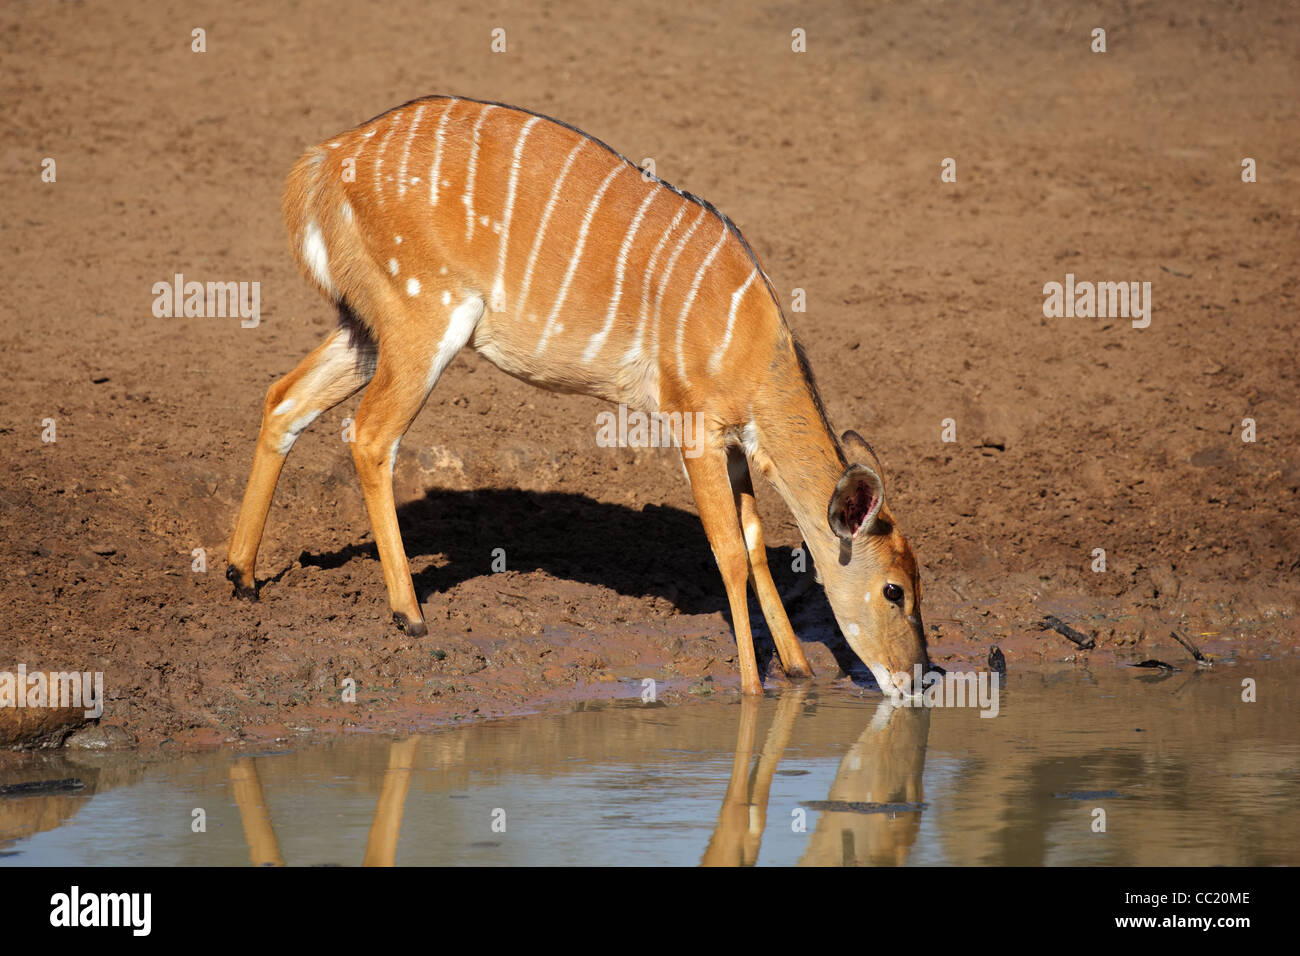 Female Nyala antelope (Tragelaphus angasii) drinking water, Mkuze game reserve, South Africa Stock Photo